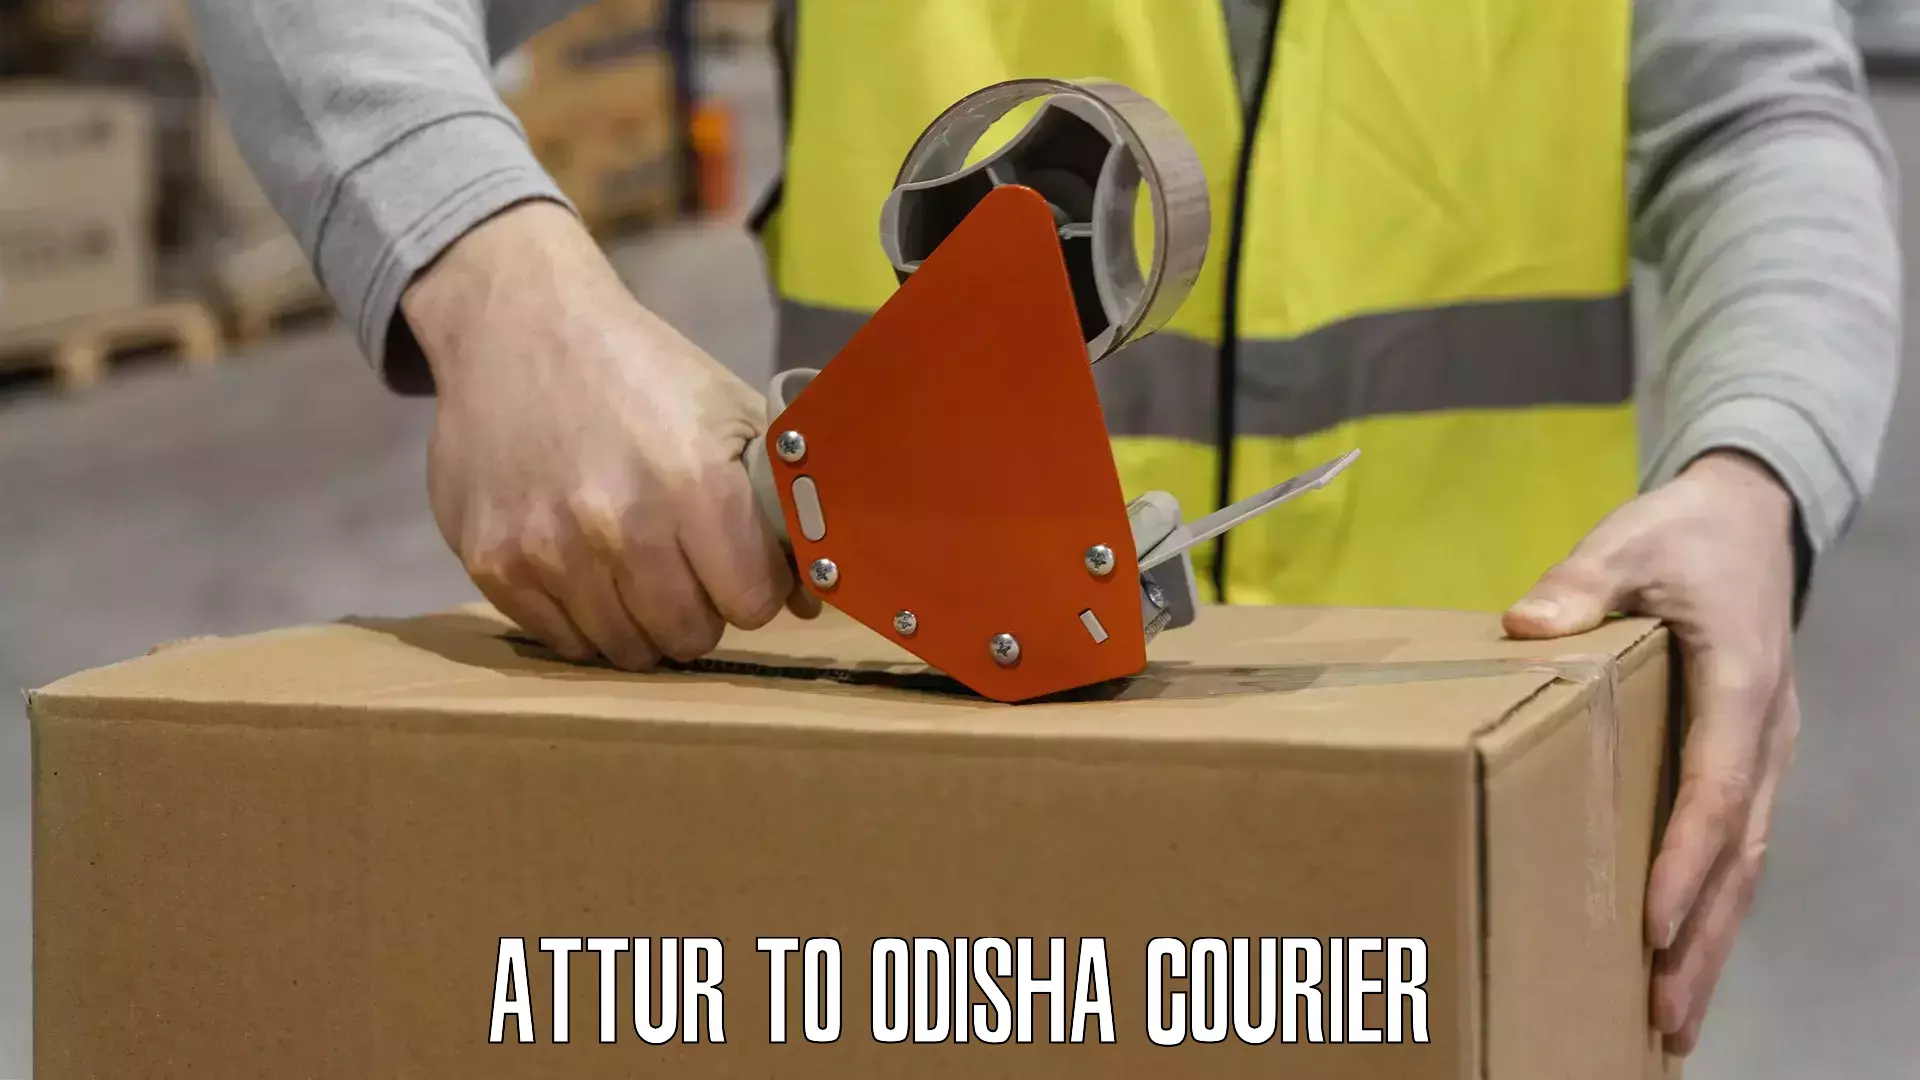 Courier service comparison Attur to Nilagiri